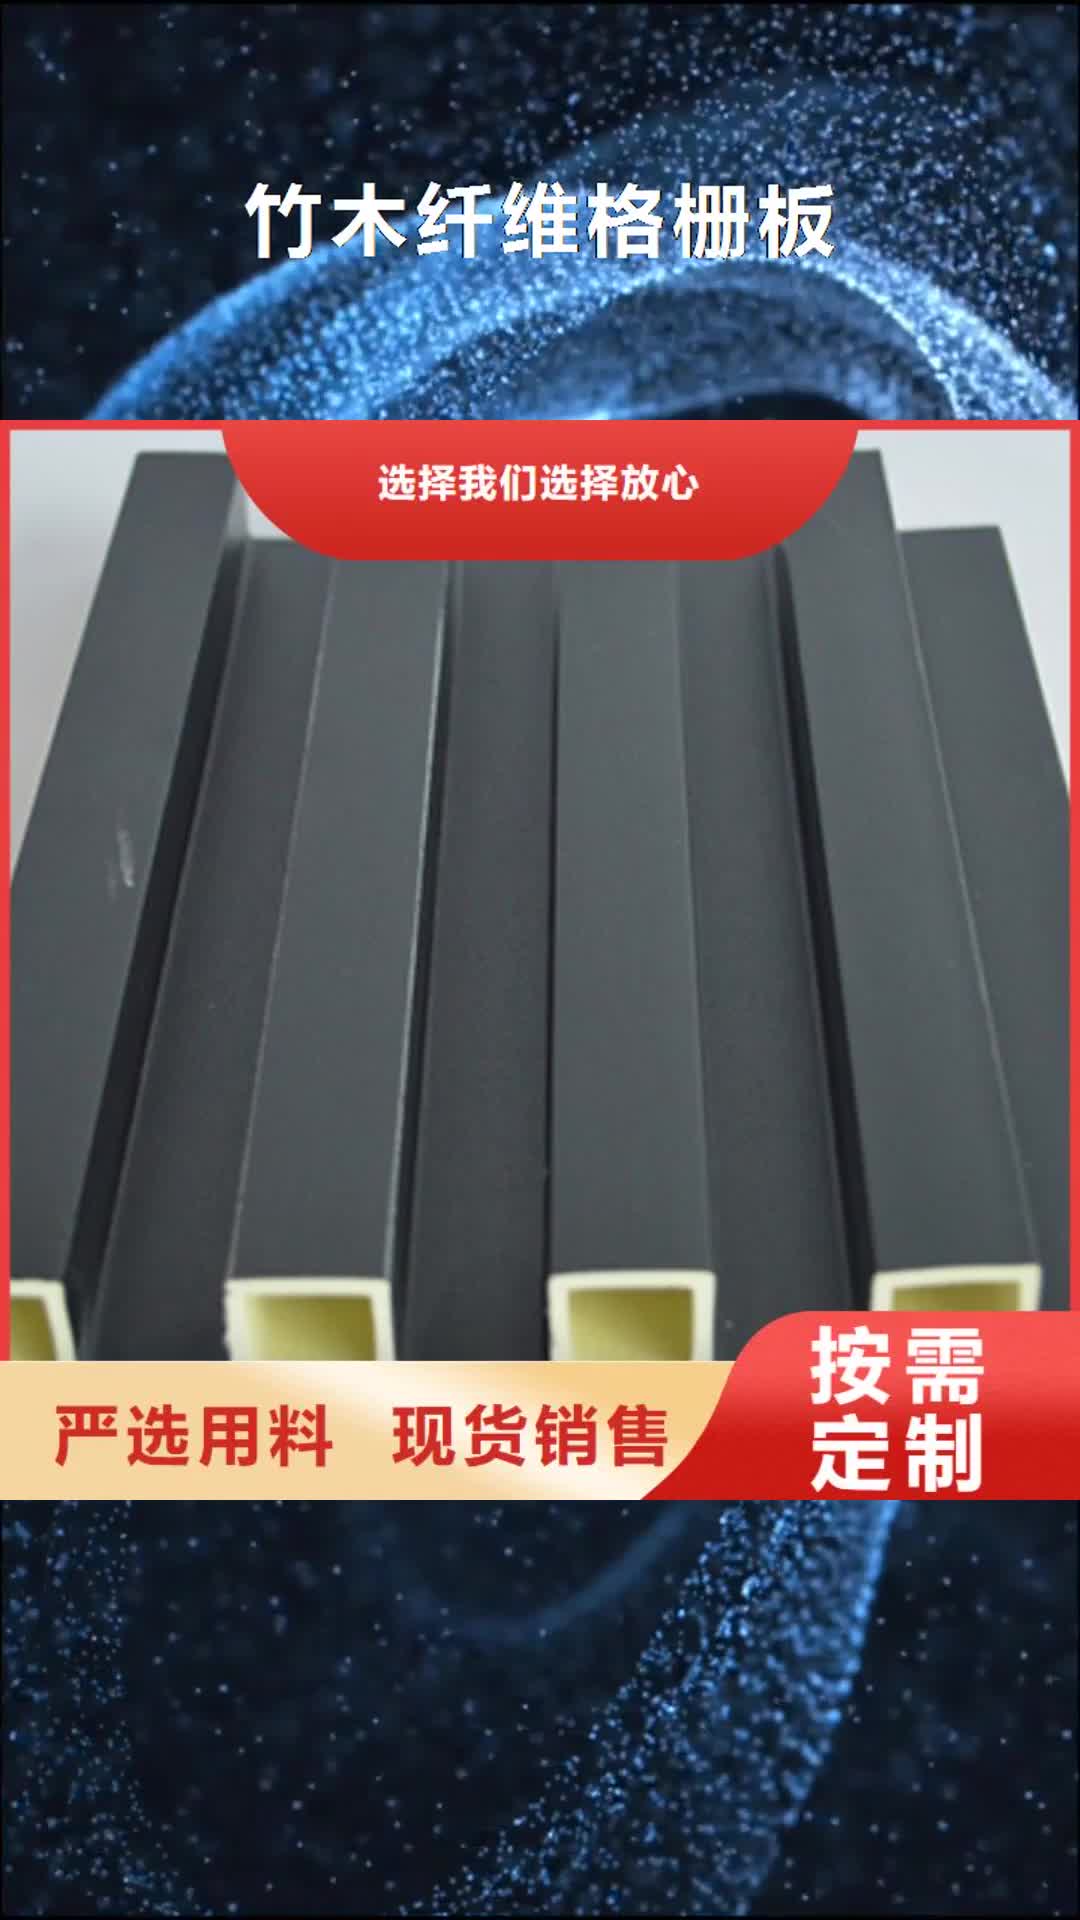 阳江【竹木纤维格栅板】 石塑集成墙板优质材料厂家直销